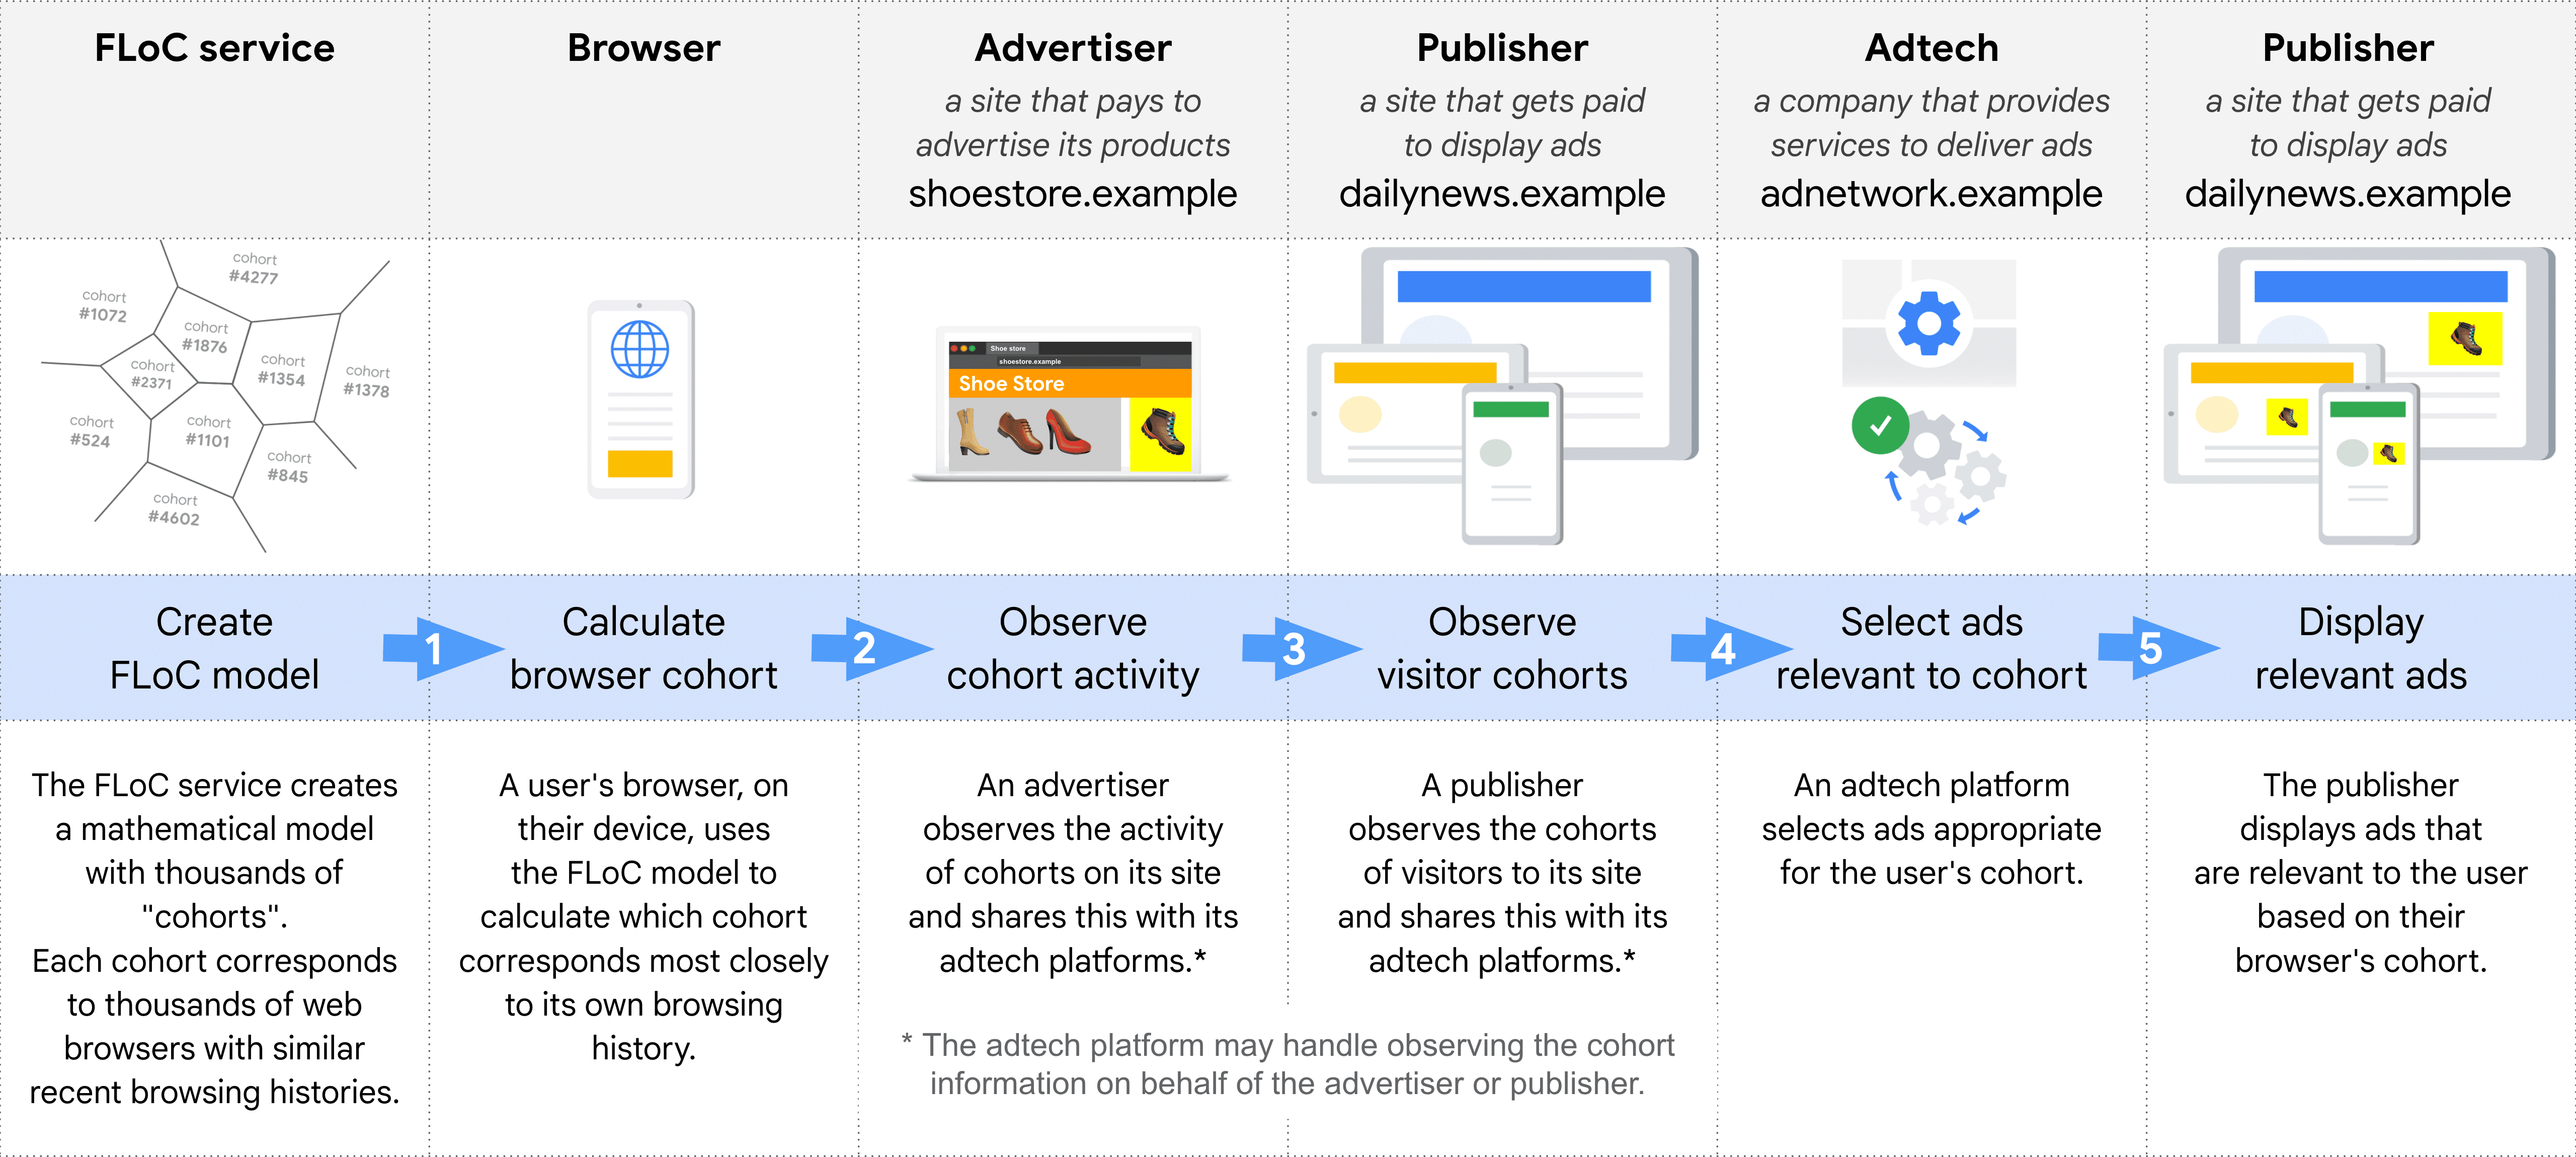 نمودار نشان دهنده نقش های مختلف در انتخاب و ارائه آگهی با استفاده از FLoC، گام به گام: سرویس FLoC، مرورگر، تبلیغ کنندگان، ناشر (برای مشاهده گروه ها)، Adtech، ناشر (برای نمایش تبلیغات)